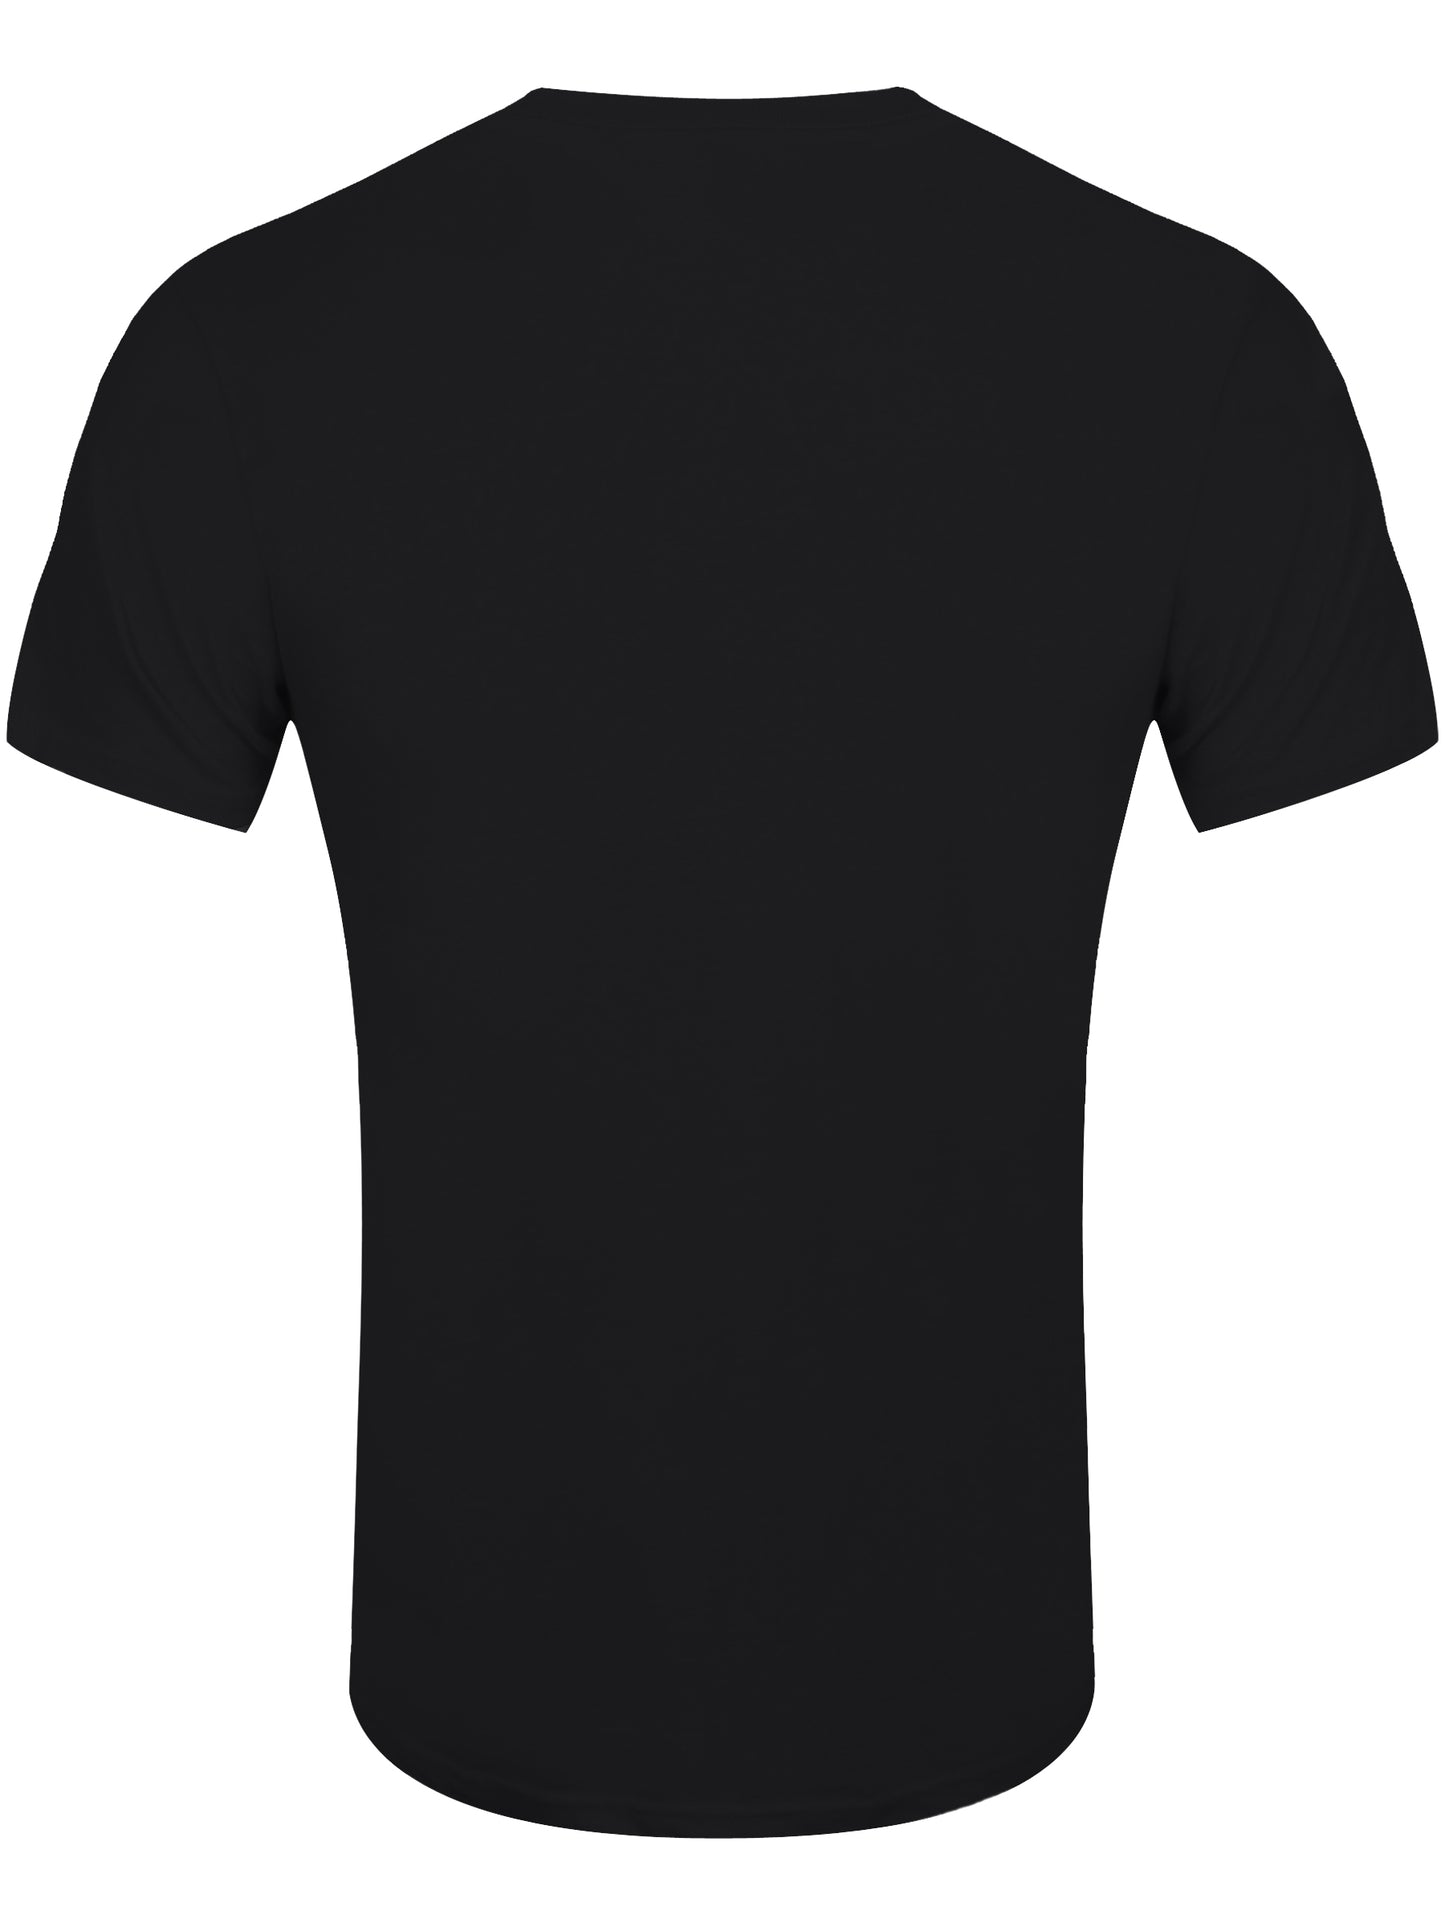 Pink Floyd Carnegie Hall Poster Men's Black T-Shirt